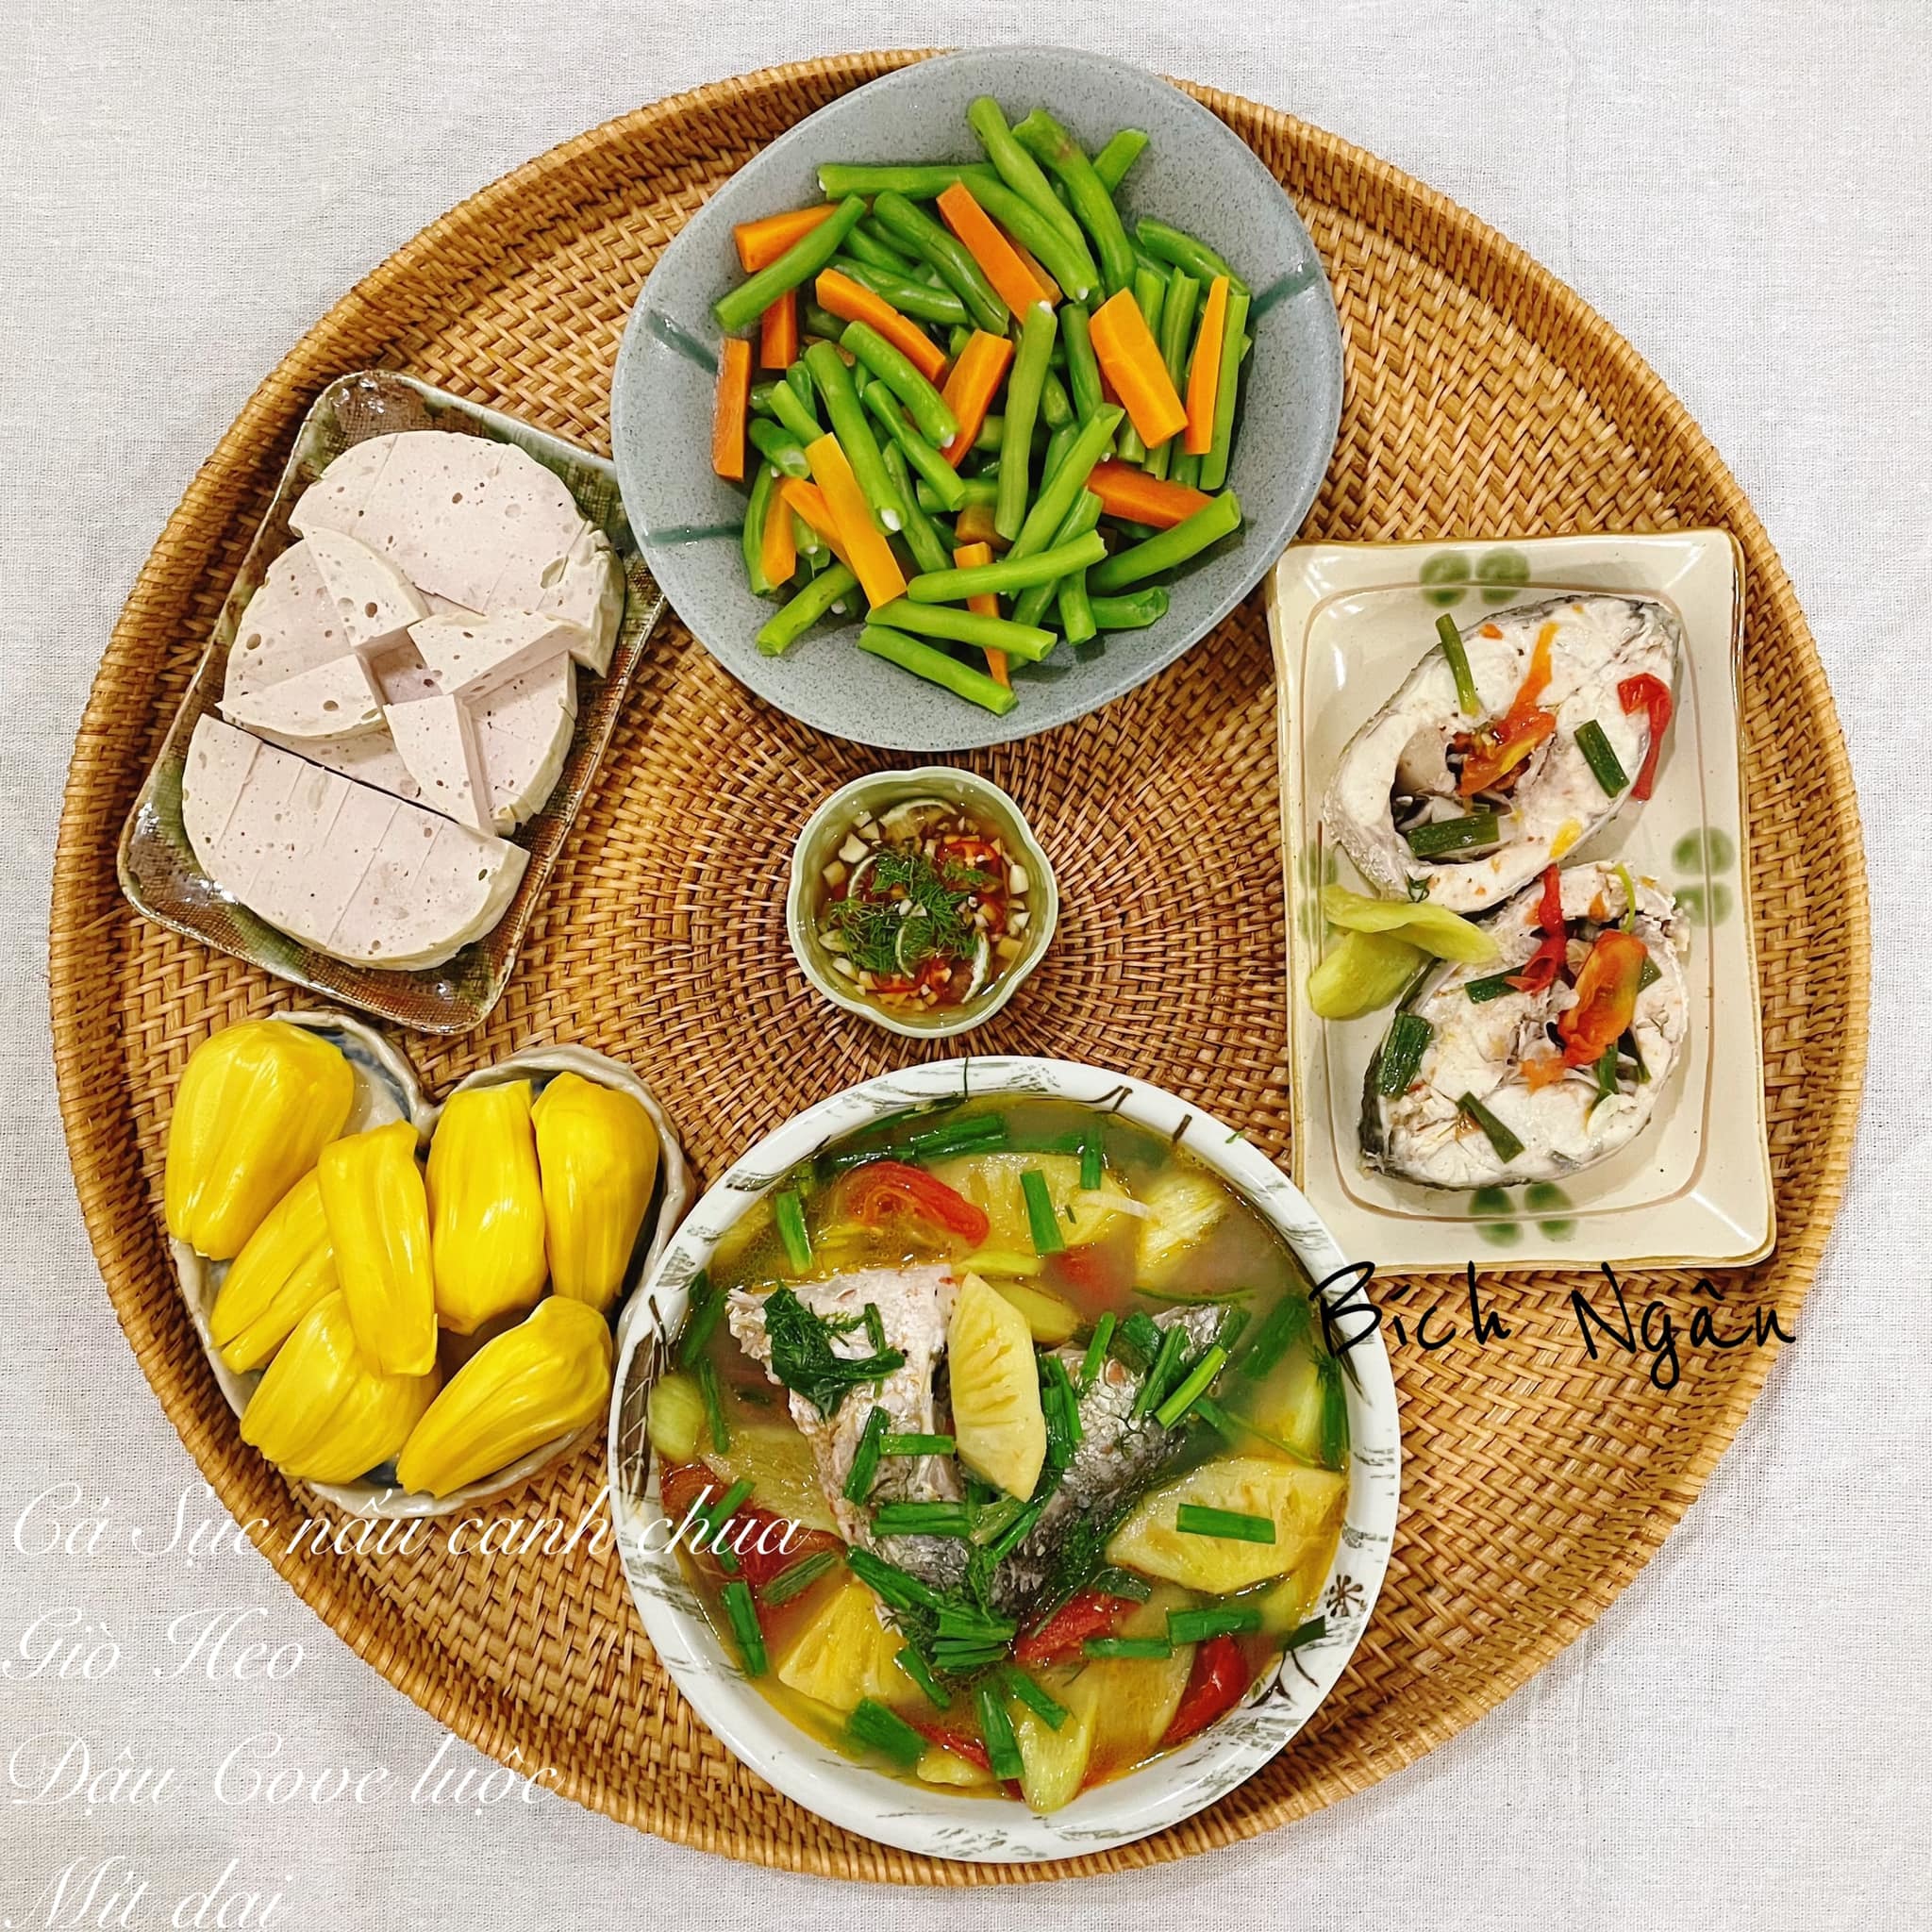 Những thực đơn cơm nhà xuất sắc của bà mẹ 3 con ở Vũng Tàu